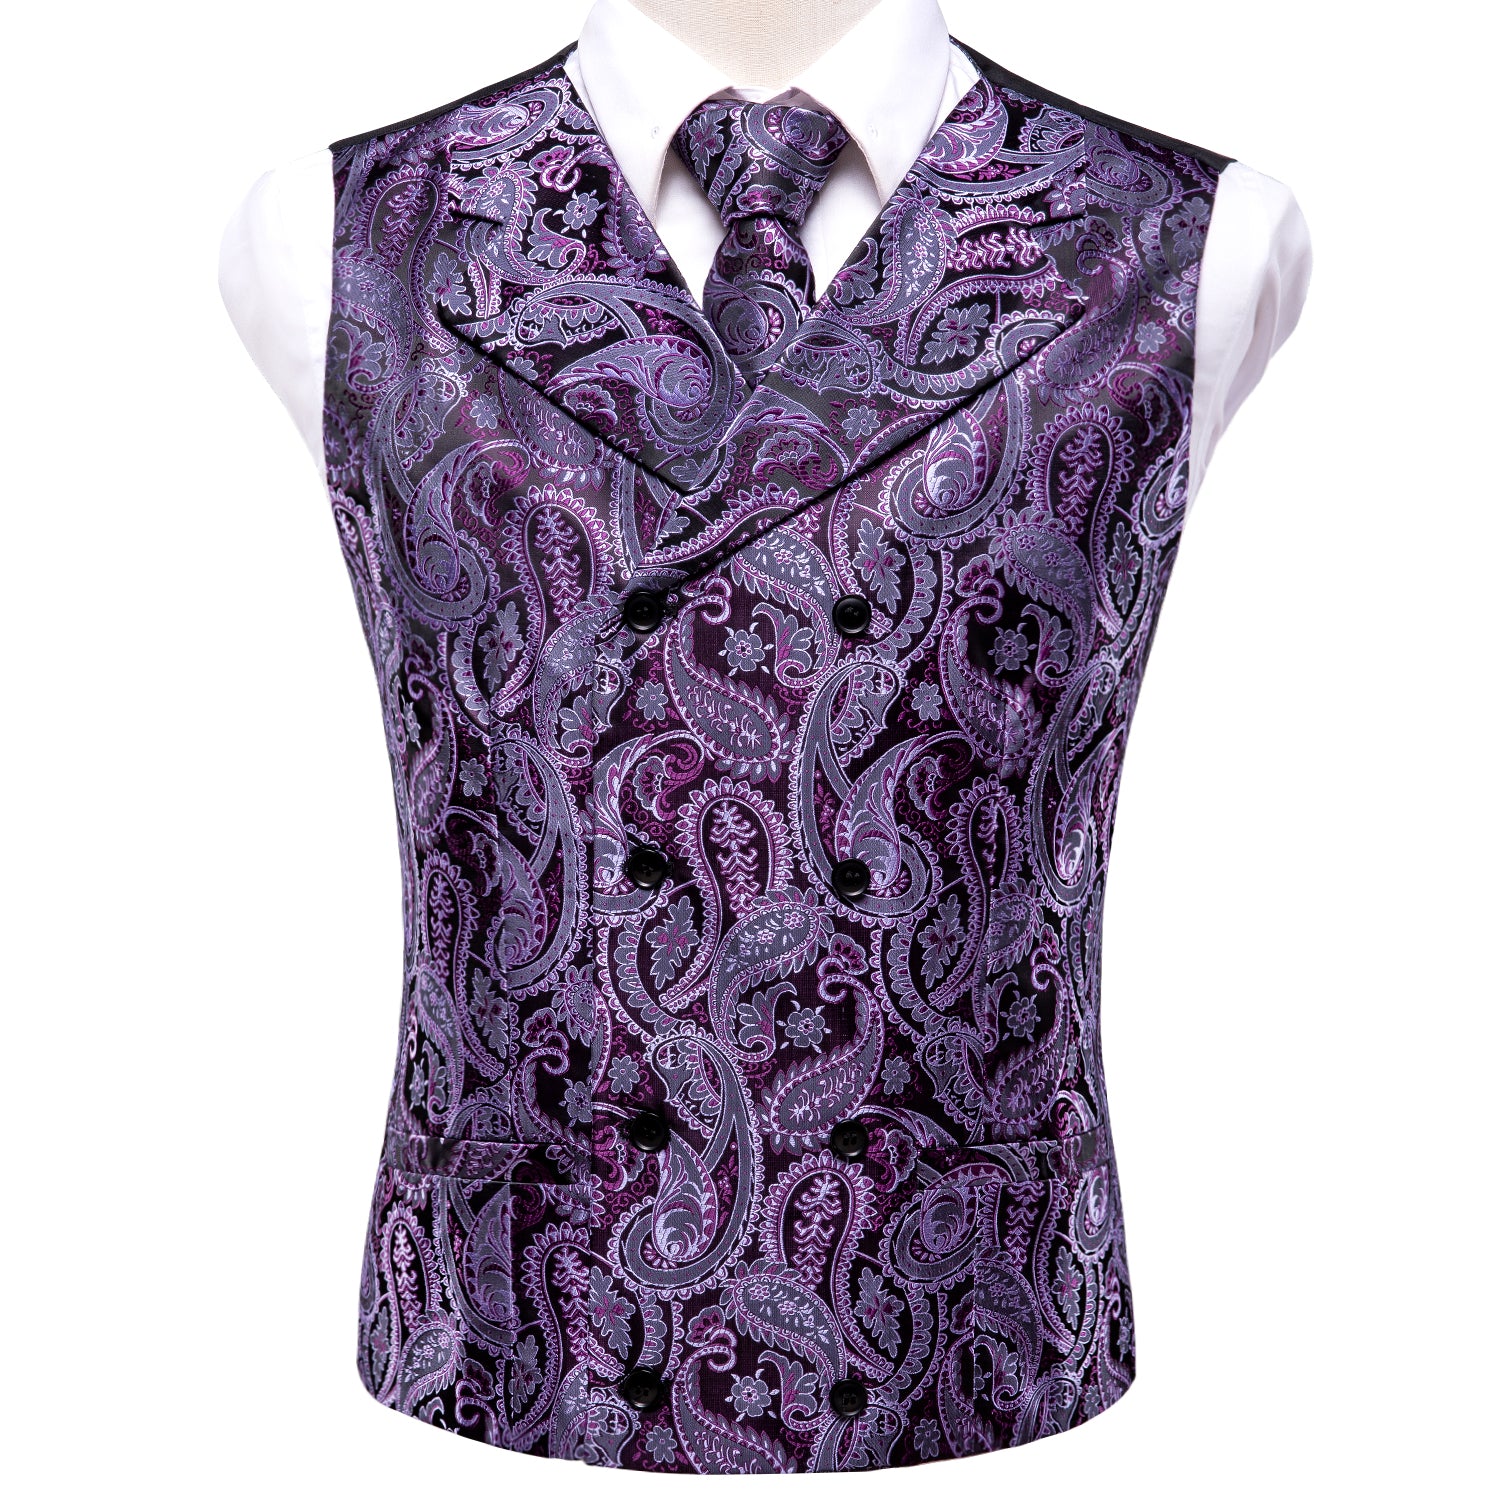 Purple Paisley Silk Men's Vest Hanky Cufflinks Tie Set Waistcoat Suit Set